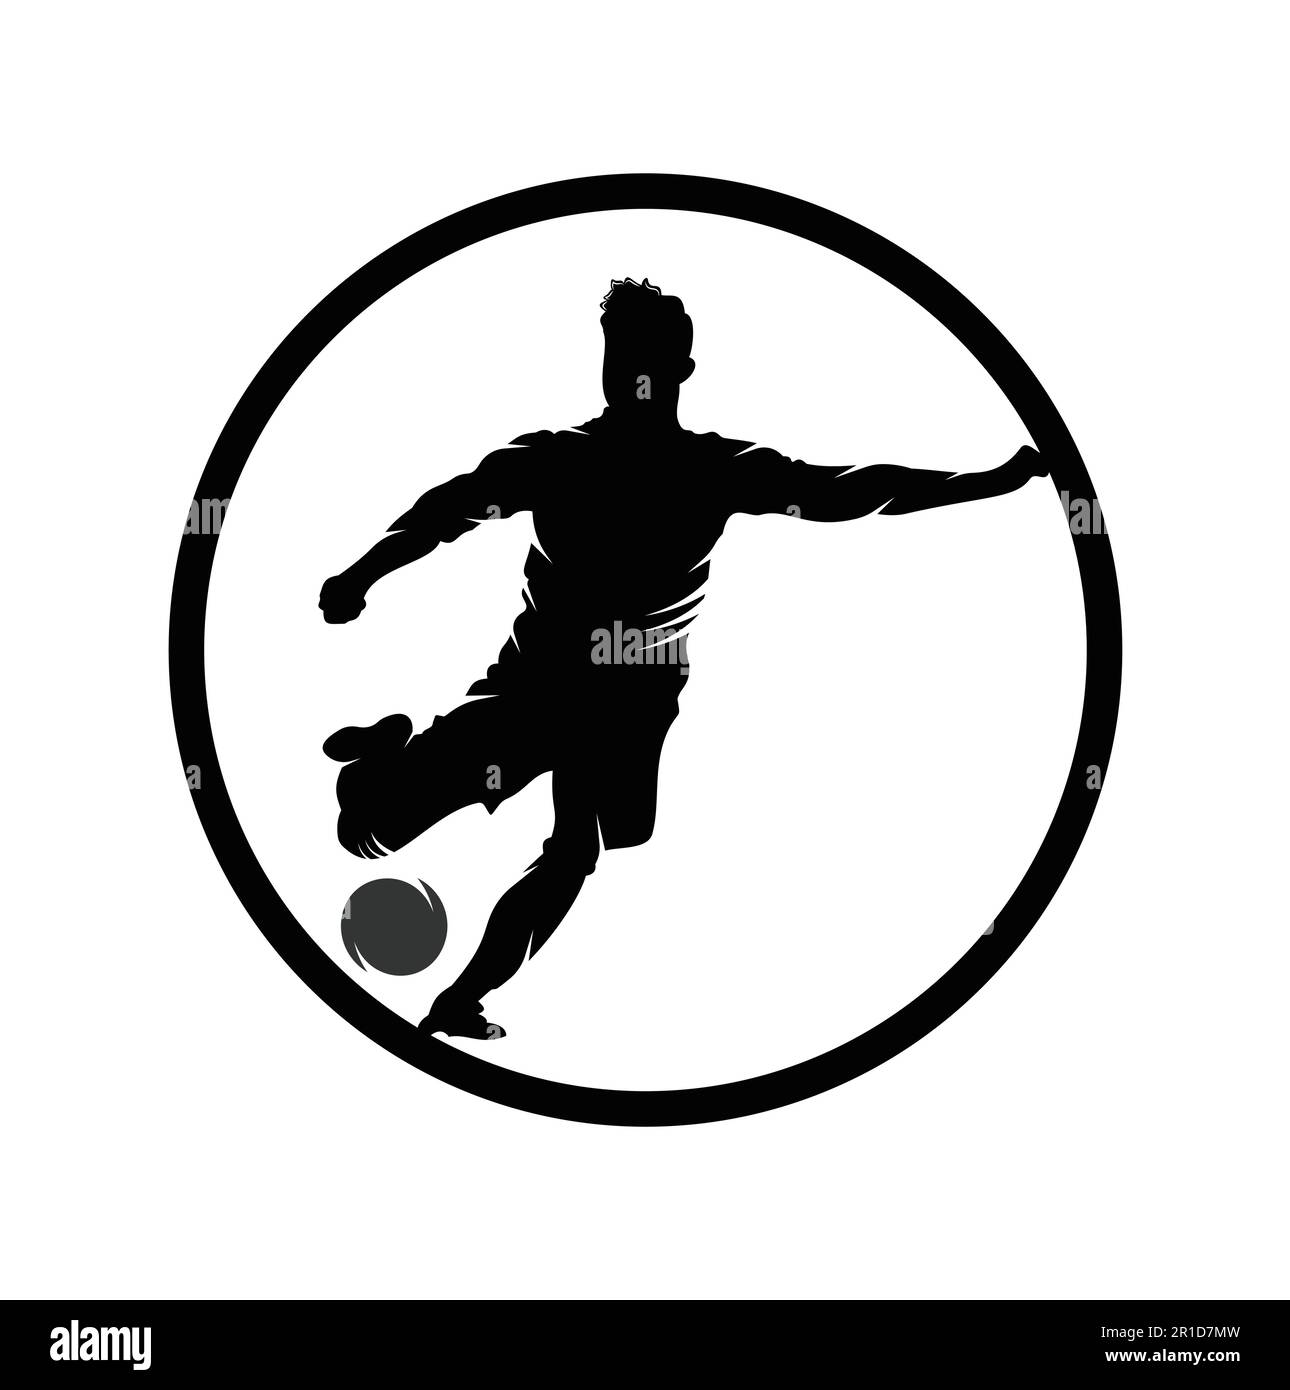 Soccer and Football Player logo design. Dribbling ball logo vector icon design. Stock Vector